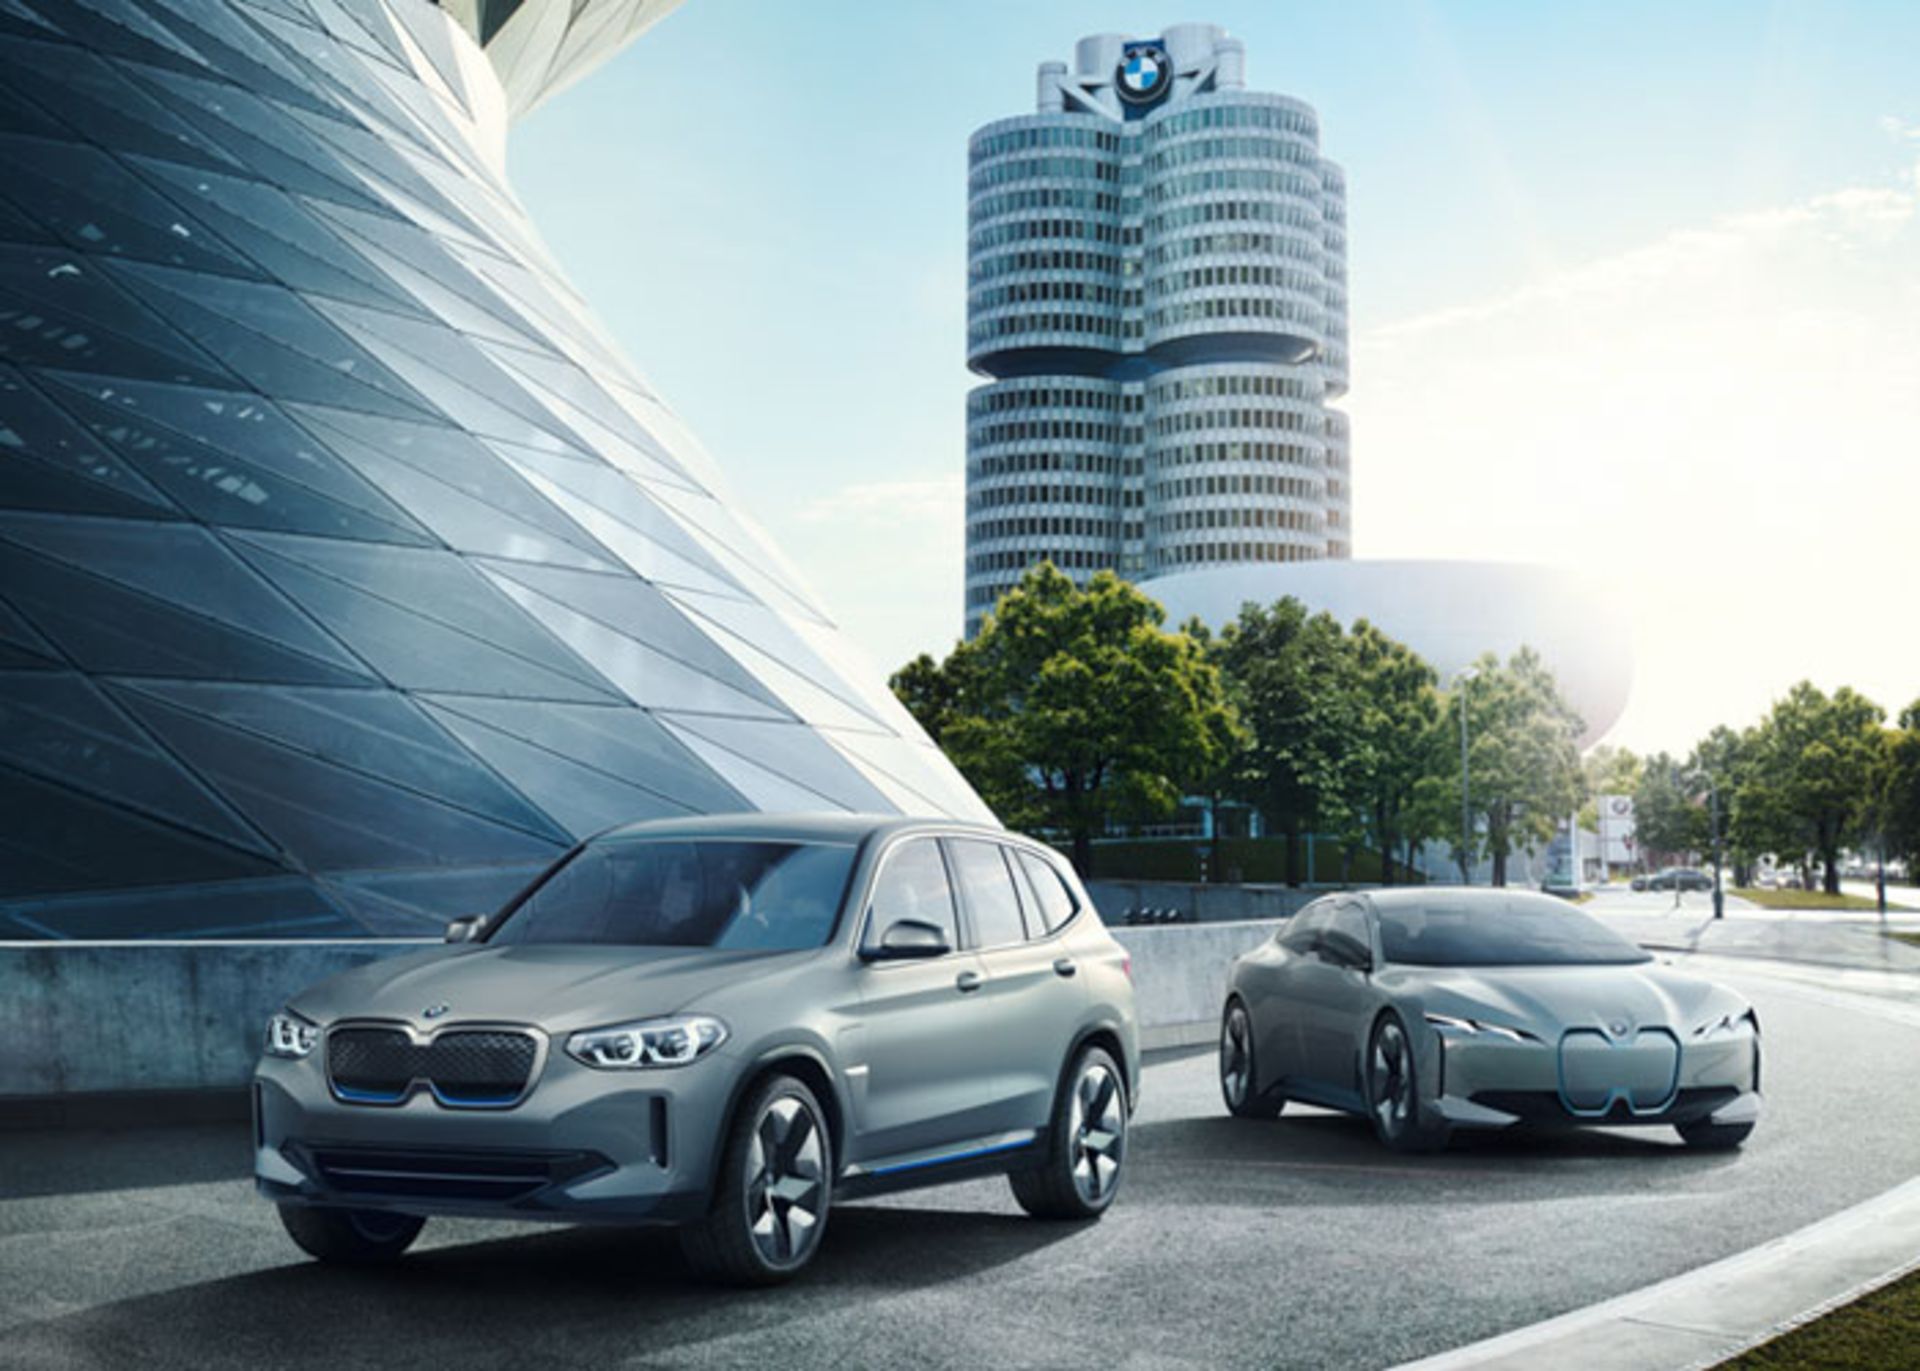 مرجع متخصصين ايران بي ام و i4 و iX3 مفهومي / BMW i4 and iX3 Concepts